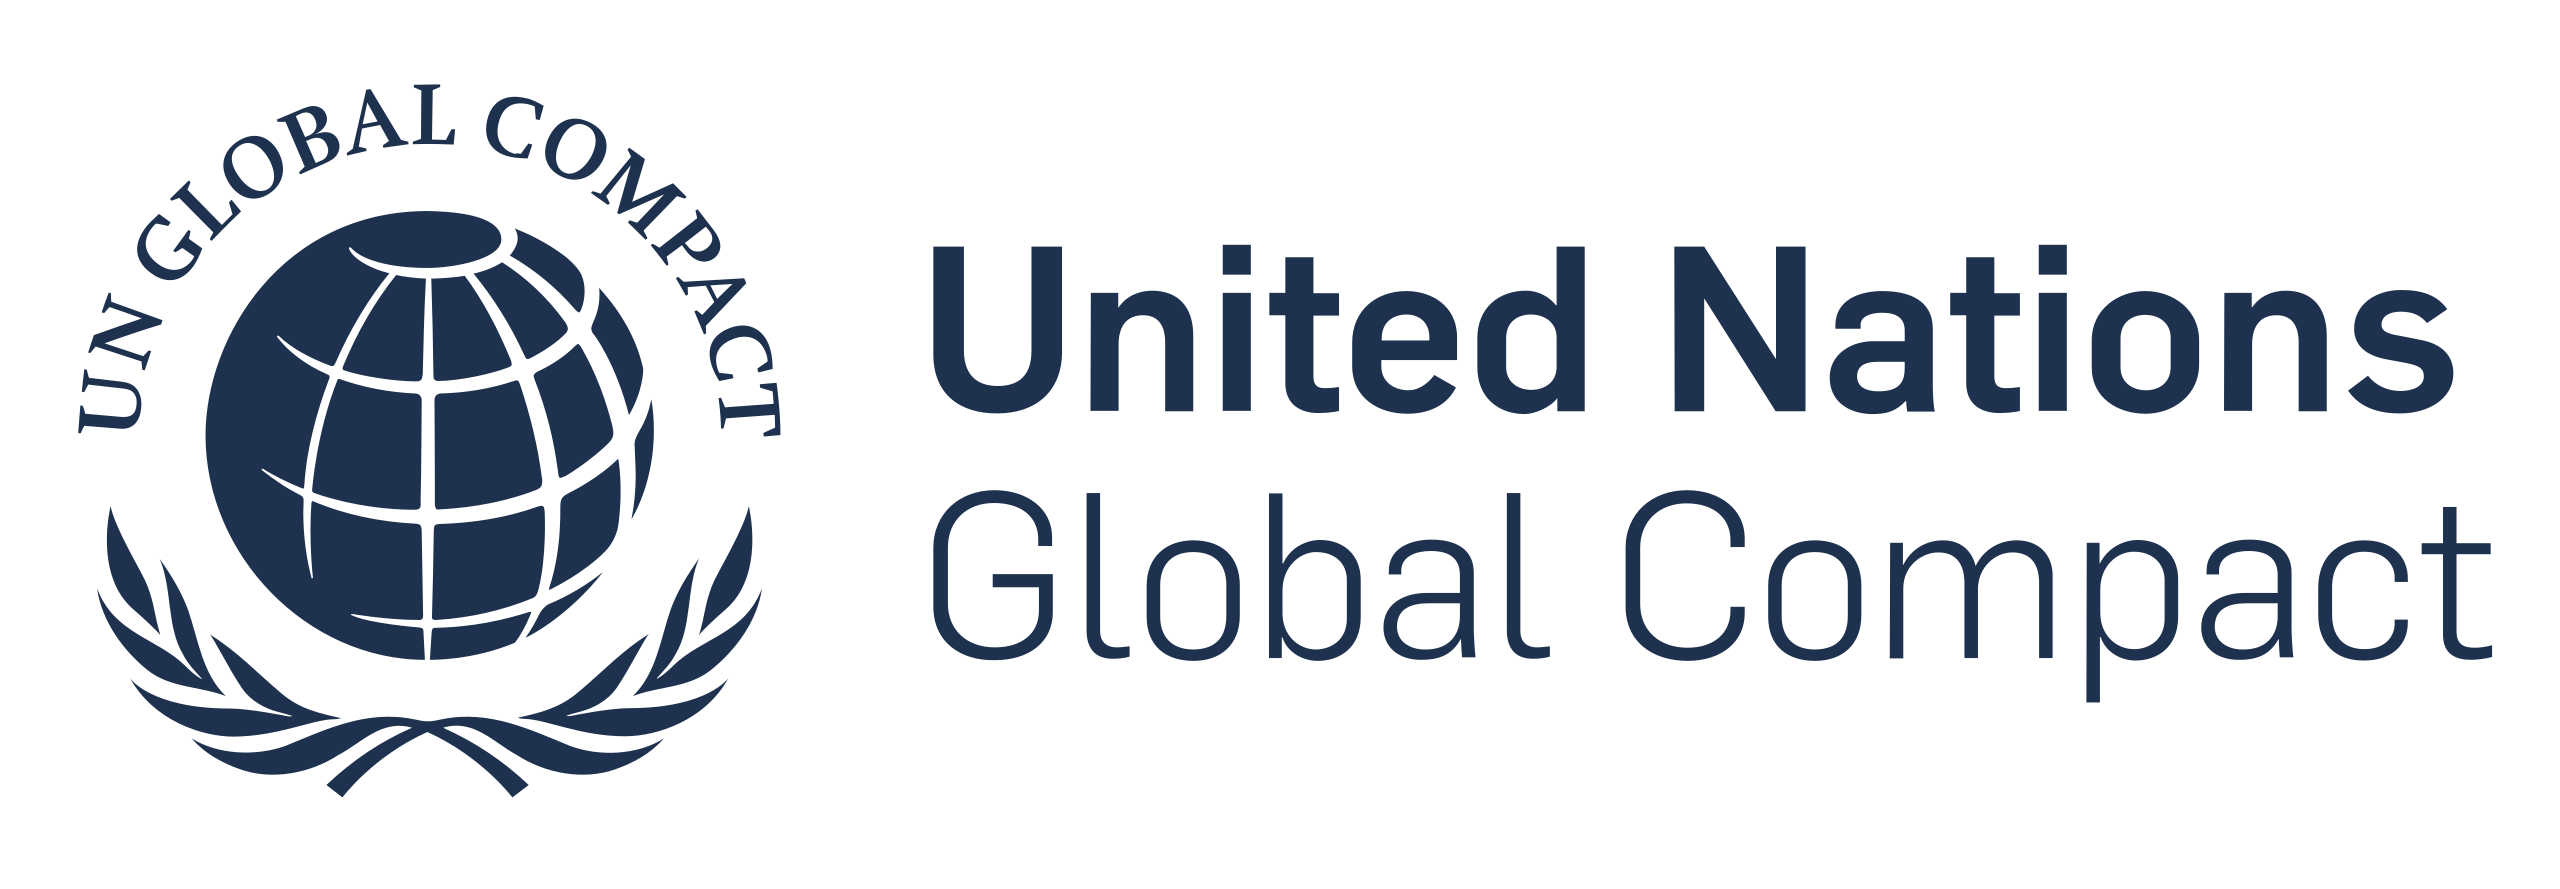 Pacto mundial de las Naciones Unidas